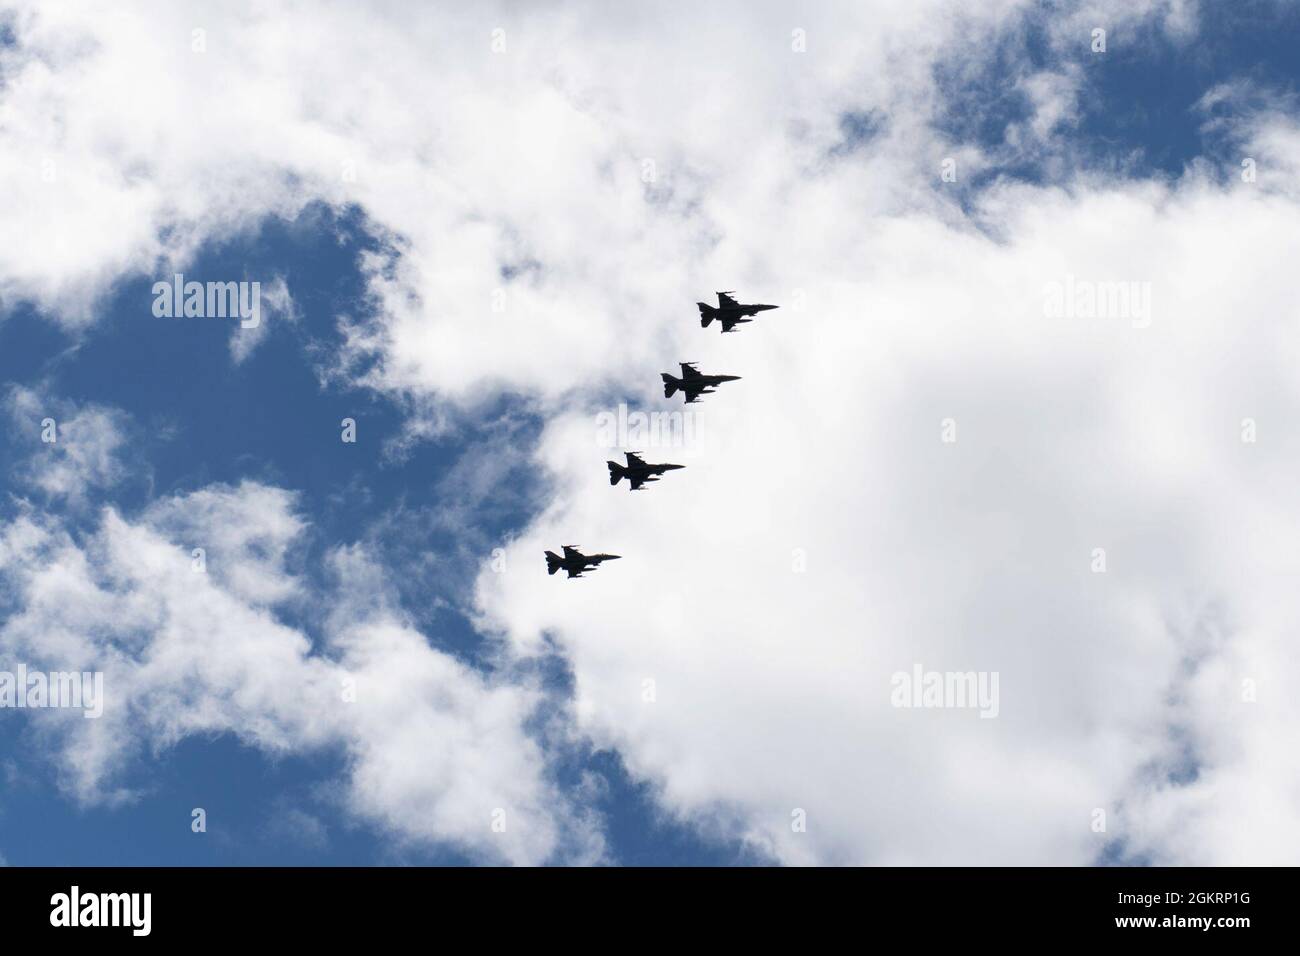 F-16 Fighting Falcons asignado al escuadrón de combate de 55th, la Base de la Fuerza Aérea Shaw, vuelan sobre la base de la Guardia Nacional Aérea de Vermont, South Burlington, Vt., 23 de junio de 2021. El F-16s del escuadrón de combate de 55th volará misiones integradas de supresión de defensas aéreas enemigas (SEAD) de la ofensiva antiaérea (OCA) con aviones F-35A Lightning II asignados al escuadrón de combate de 134th, Guardia Nacional Aérea de Vermont. Foto de stock